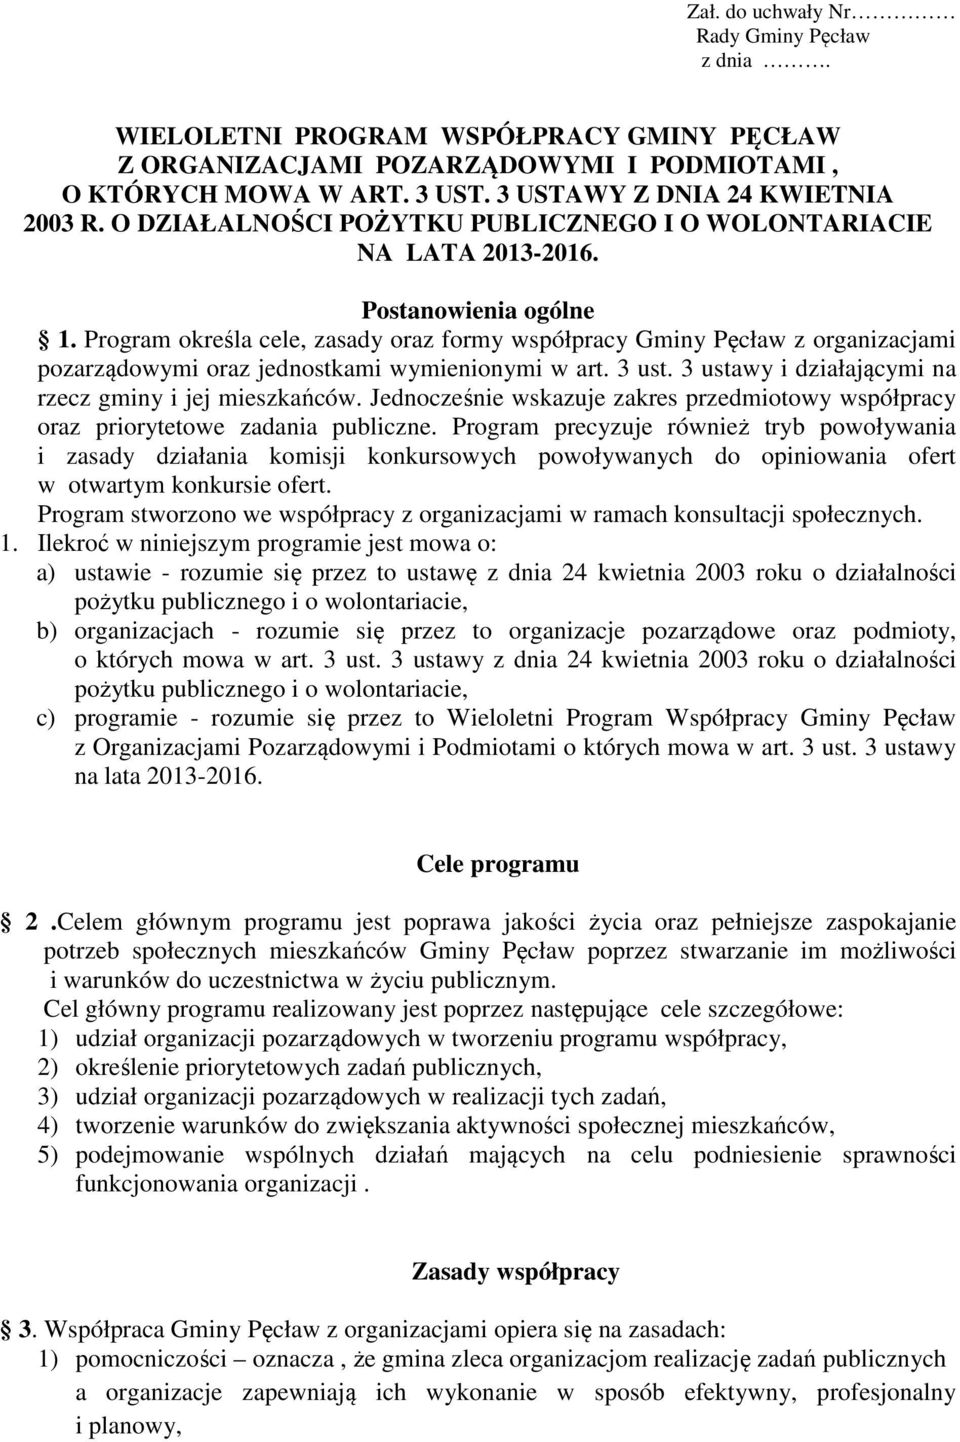 Program określa cele, zasady oraz formy współpracy Gminy Pęcław z organizacjami pozarządowymi oraz jednostkami wymienionymi w art. 3 ust. 3 ustawy i działającymi na rzecz gminy i jej mieszkańców.